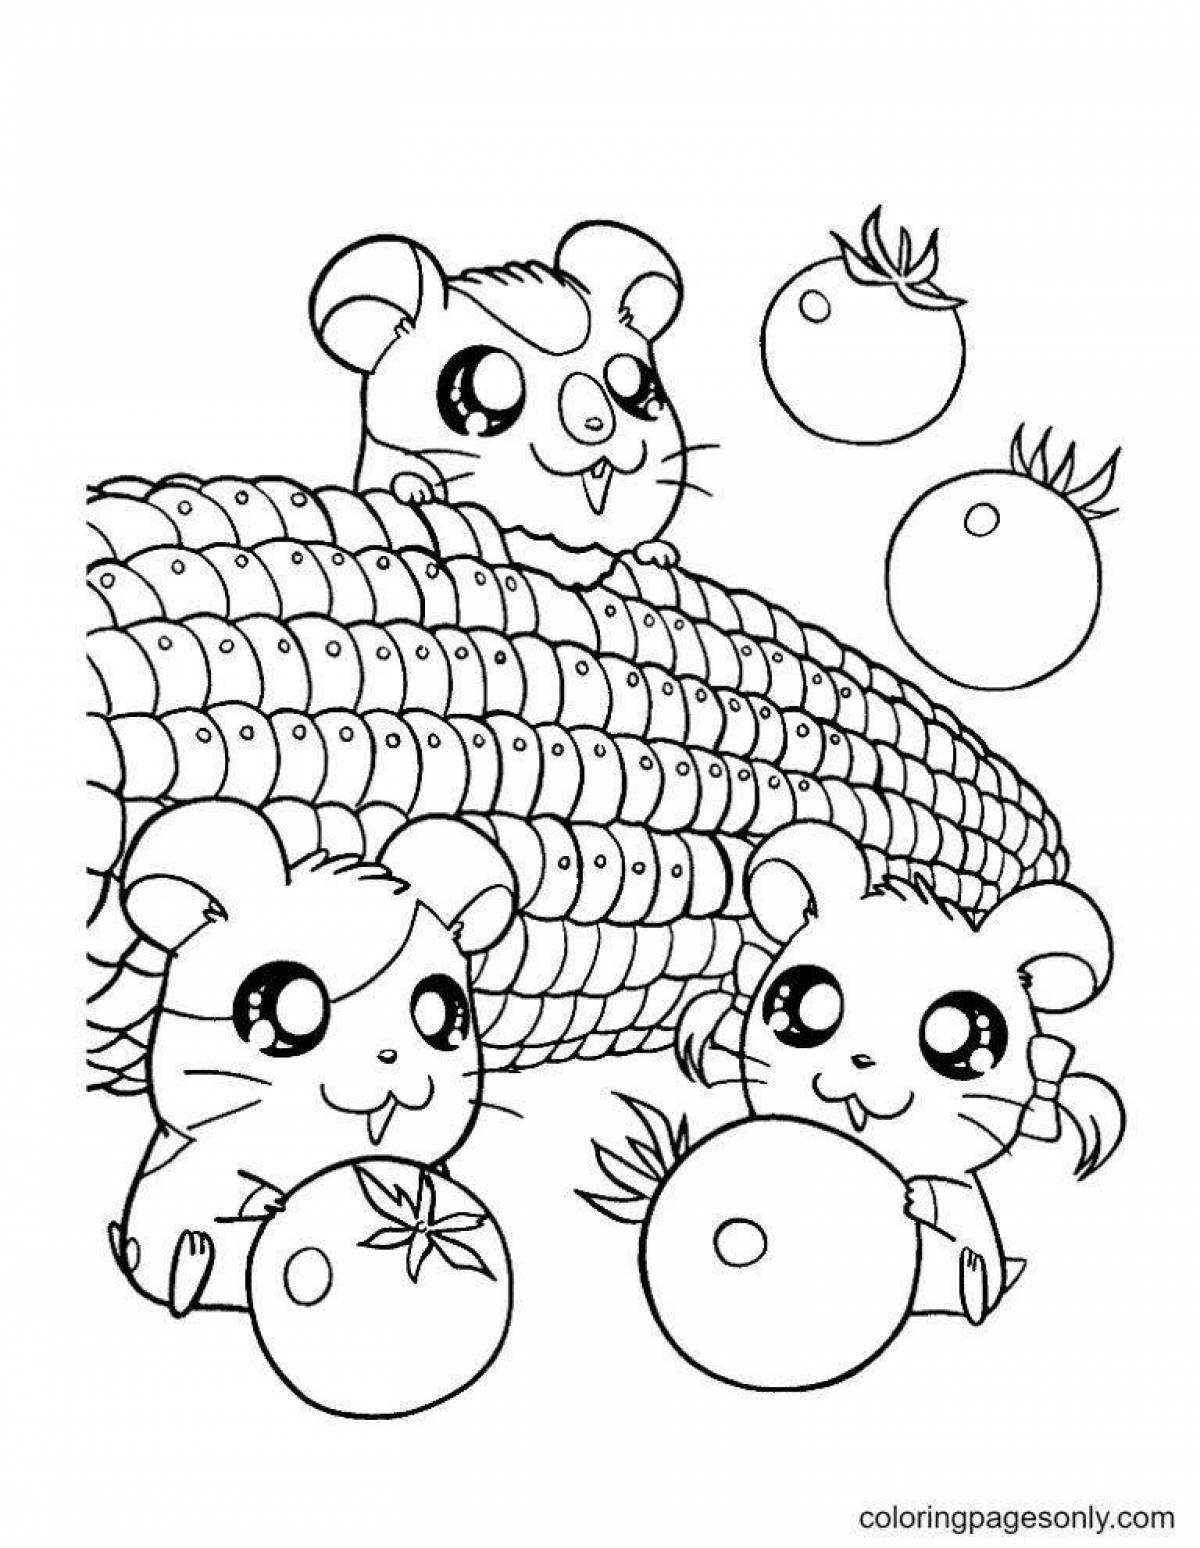 Cute hamster coloring book